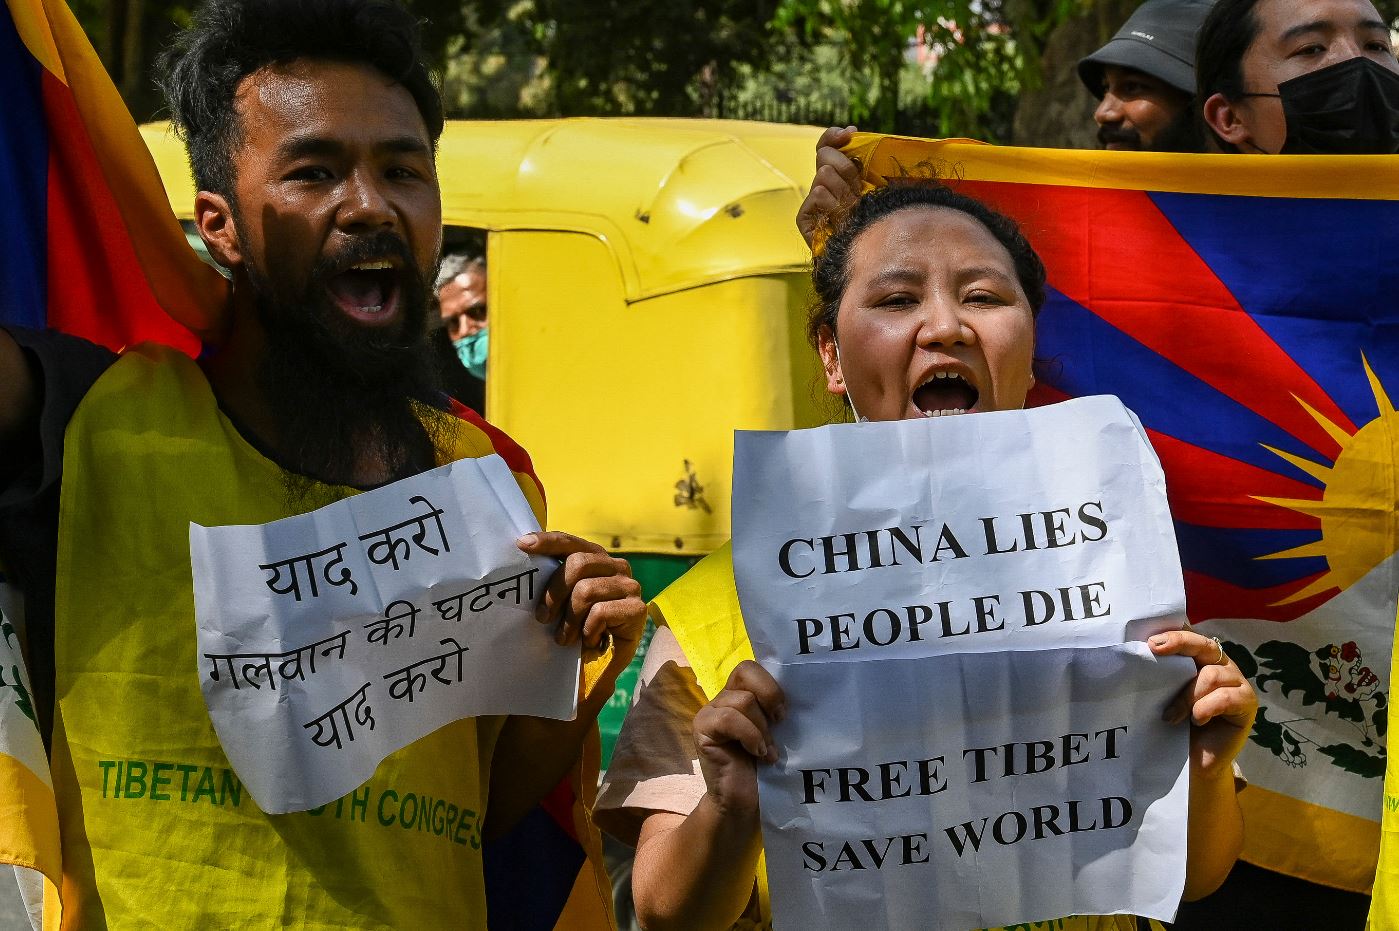 Chuyên gia: Bất chấp thái độ hòa hoãn của Trung Quốc, Ấn Độ không thể hạ thấp cảnh giác